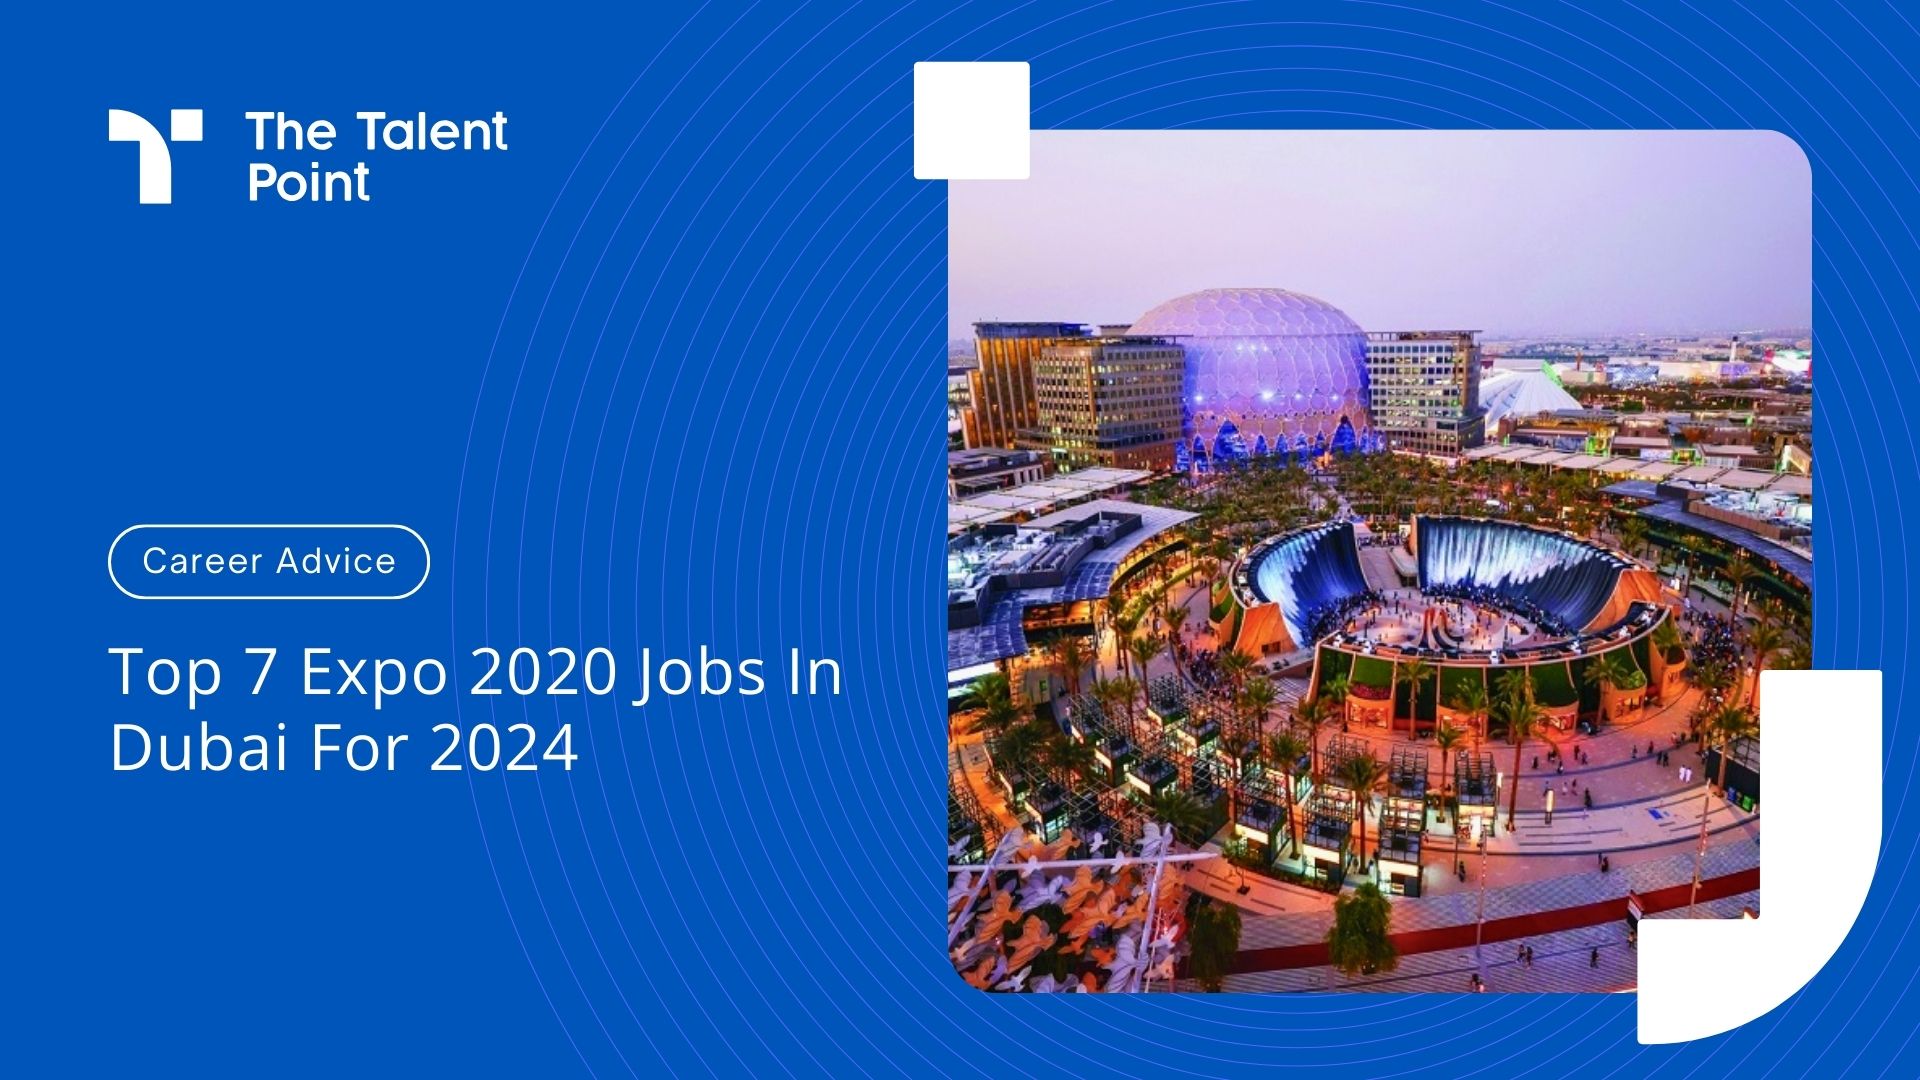 Top 7 Expo 2020 Jobs In Dubai For 2024